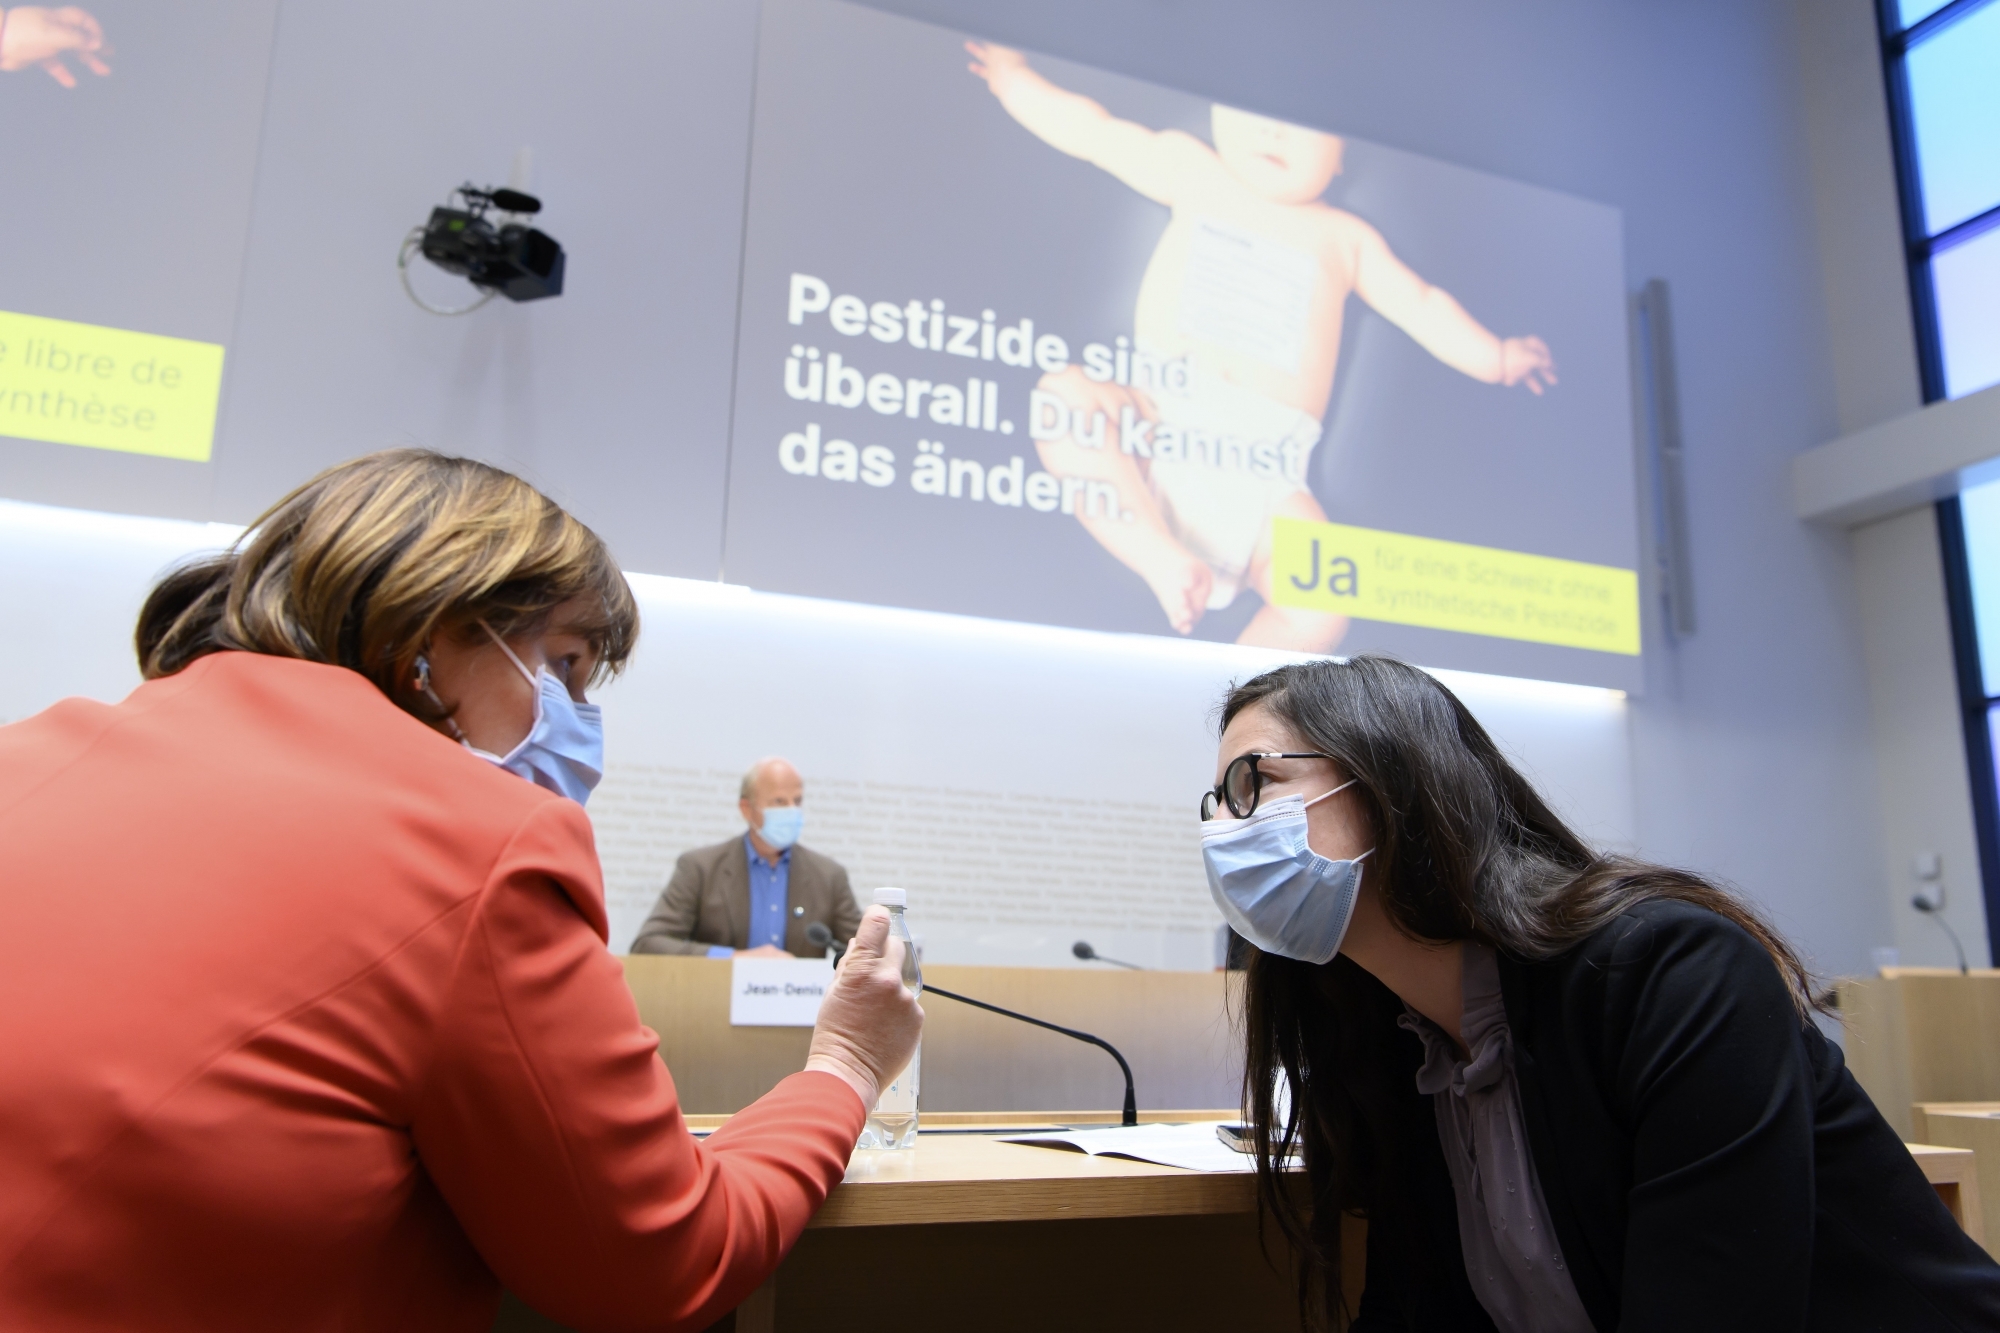 La Neuchâteloise Céline Vara, avec sa collègue tessinoise Marina Carobbio, lors du lancement de la campagne de l'initiative "pour une Suisse libre de pesticides de synthèse", le 30 mars dernier.